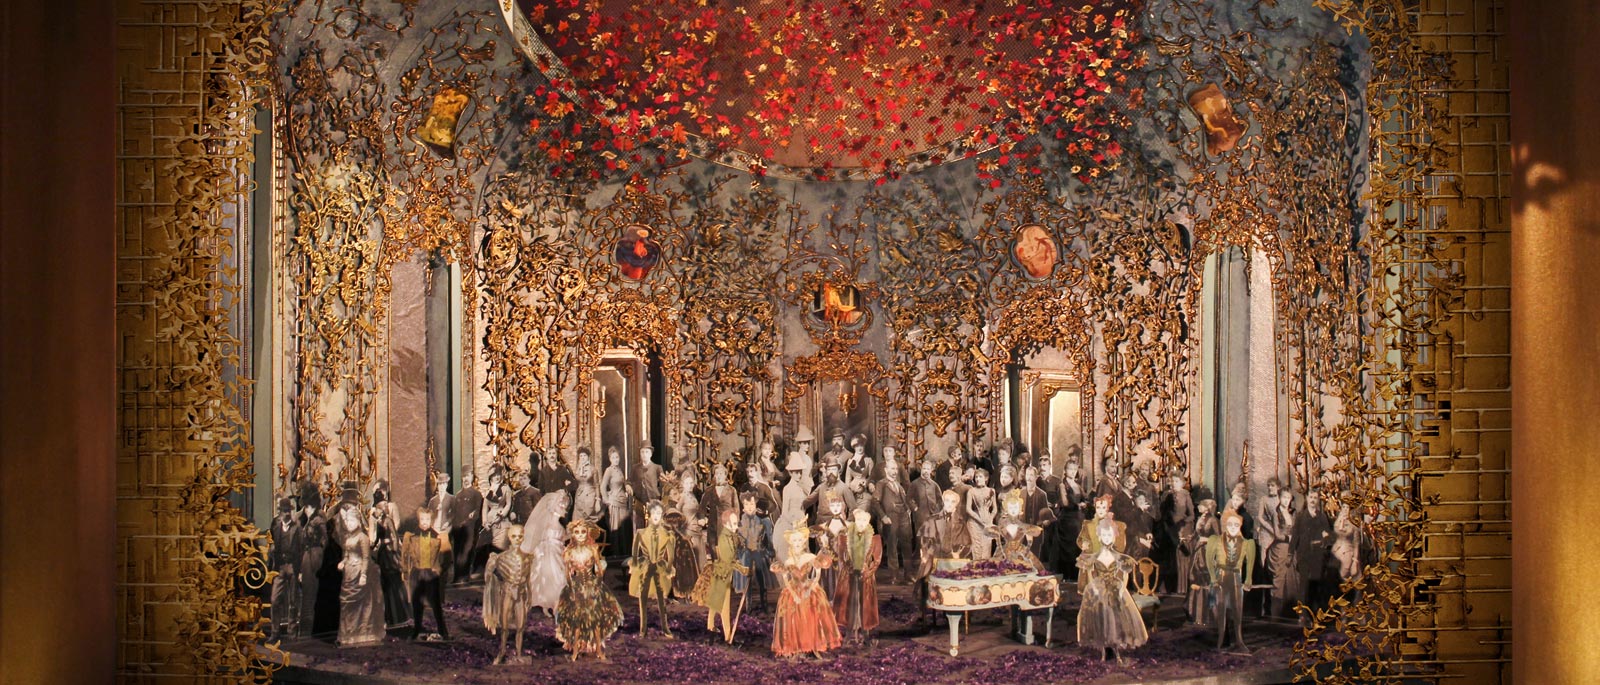 A scene from La Traviata